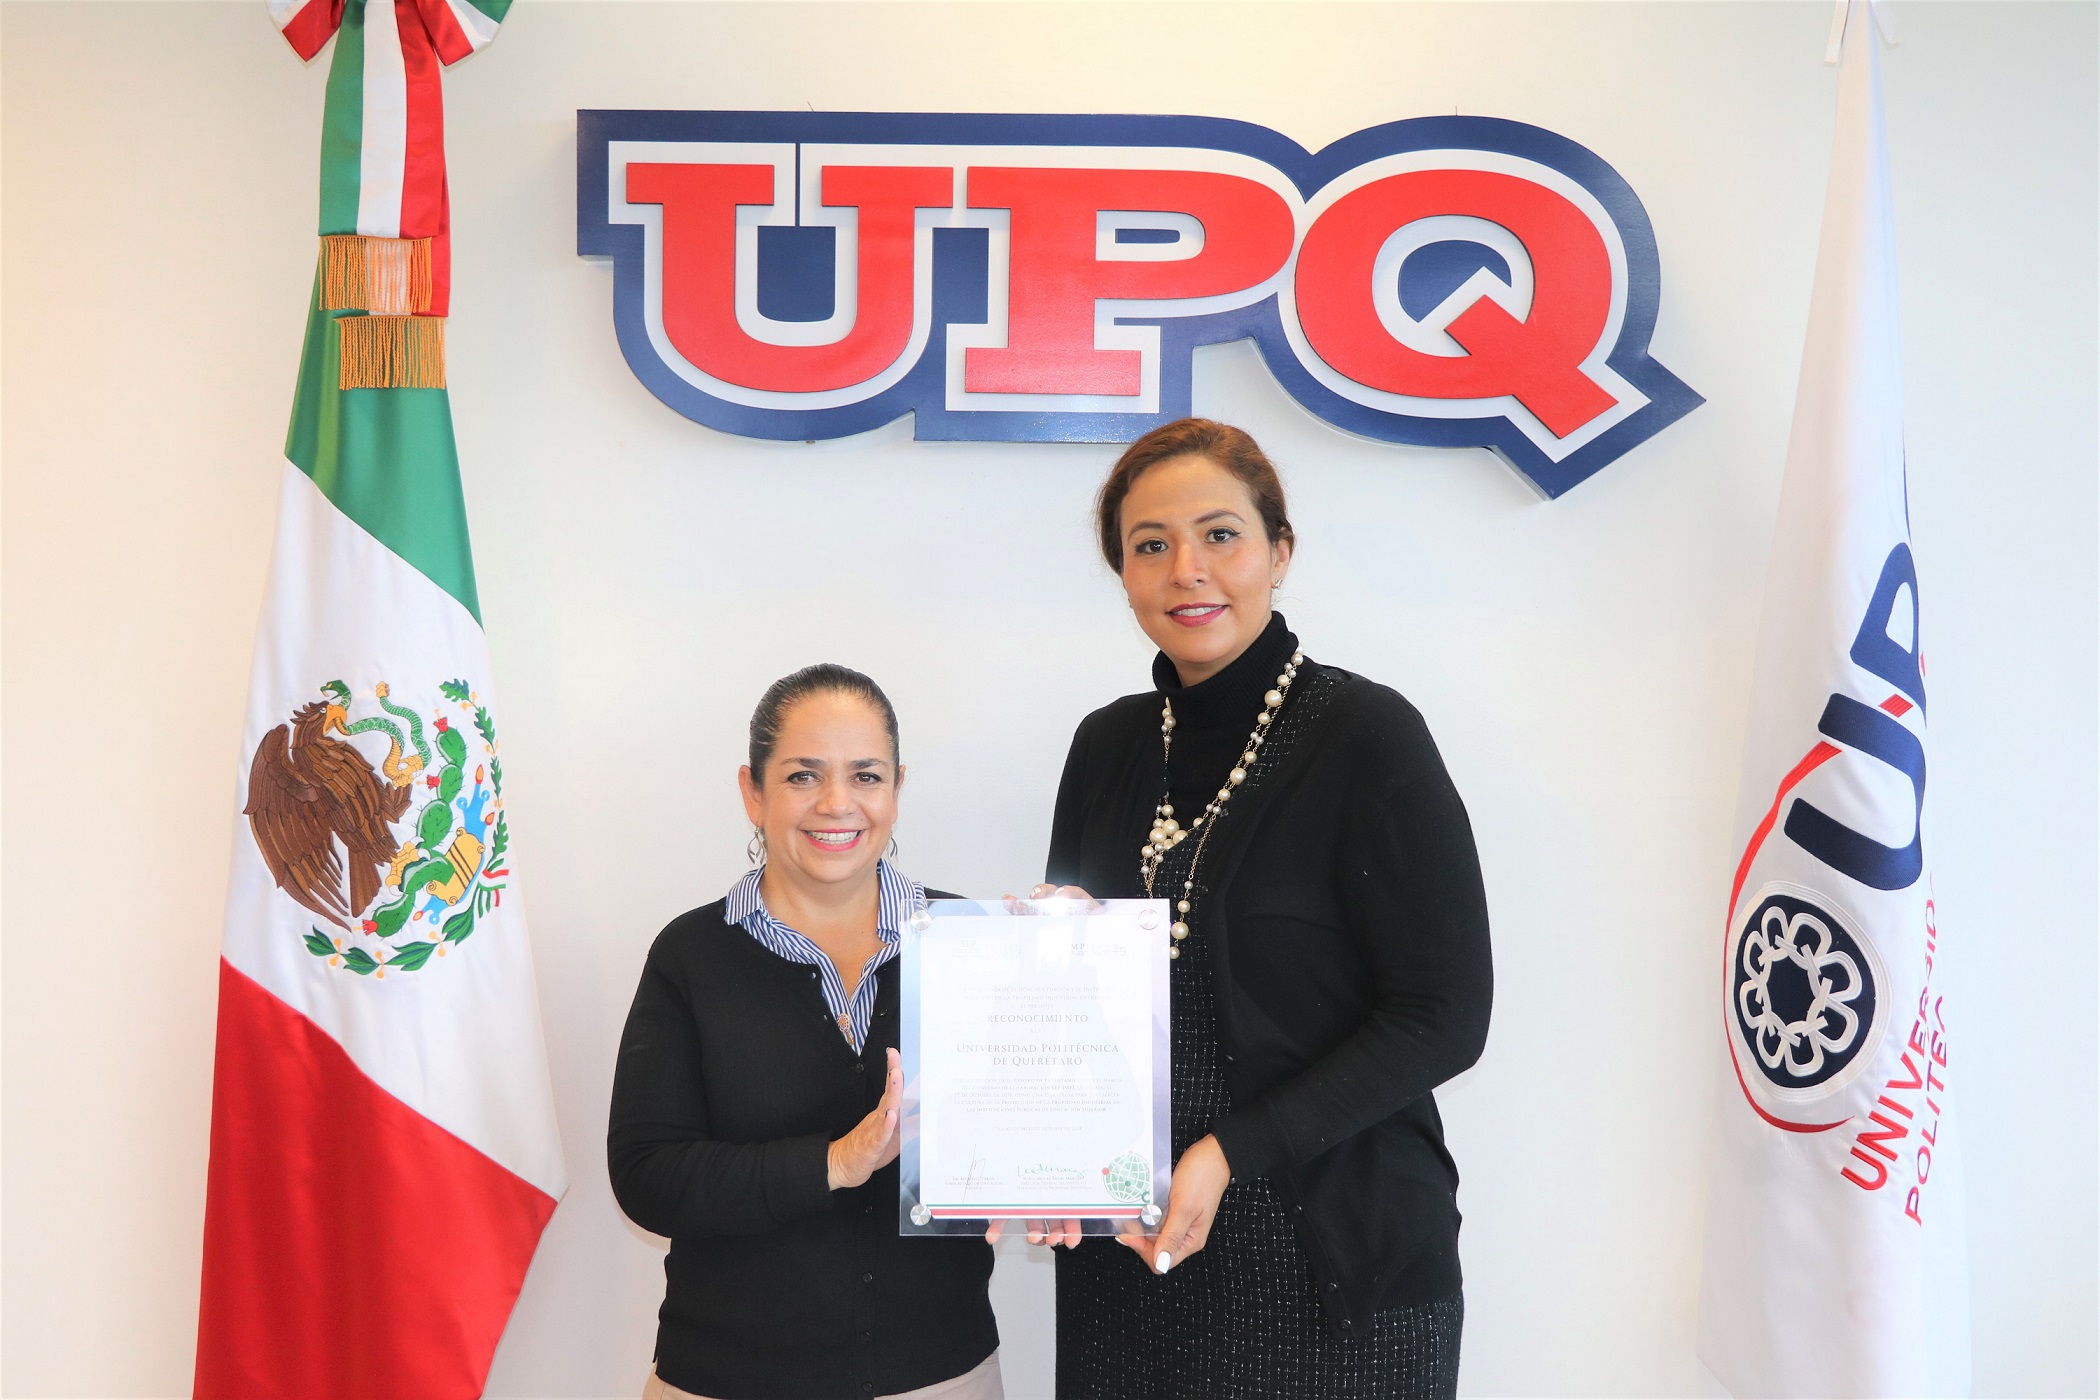 La UPQ recibe constancia que la acredita como Centro de Patentamiento certificado por el IMPI.